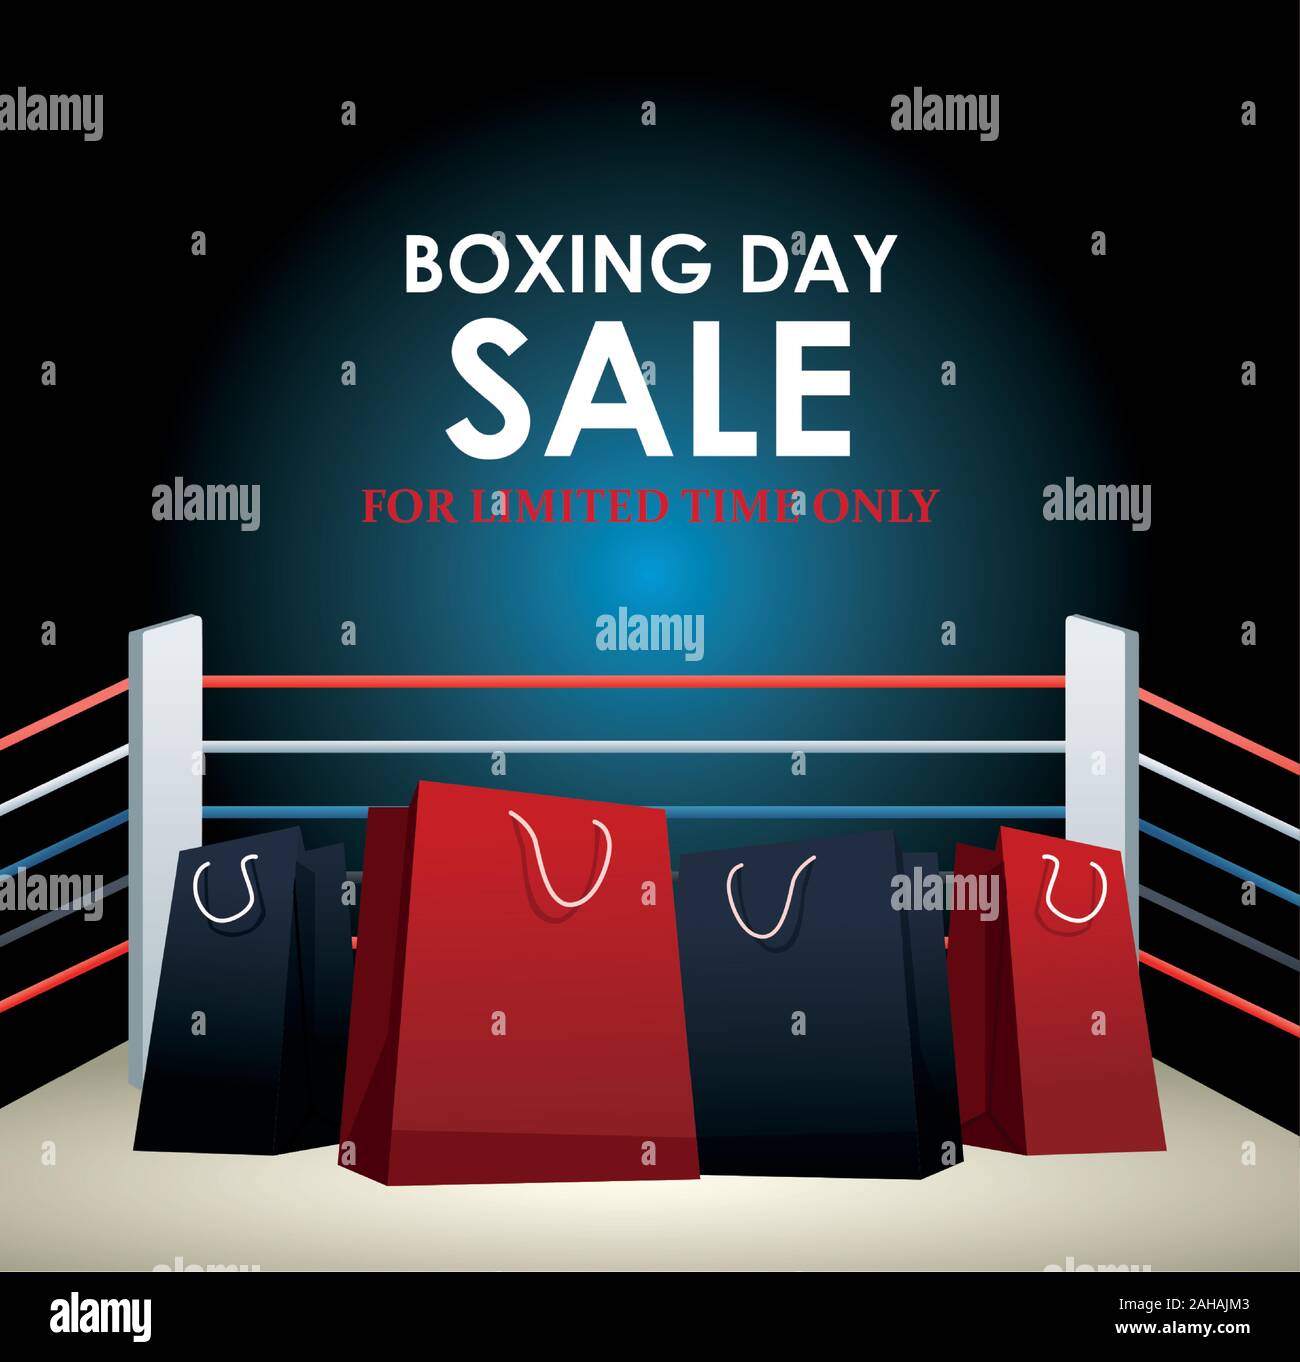 Boxing Day Dale farbenfrohes Design mit Tüten auf boxring Hintergrund Stock Vektor